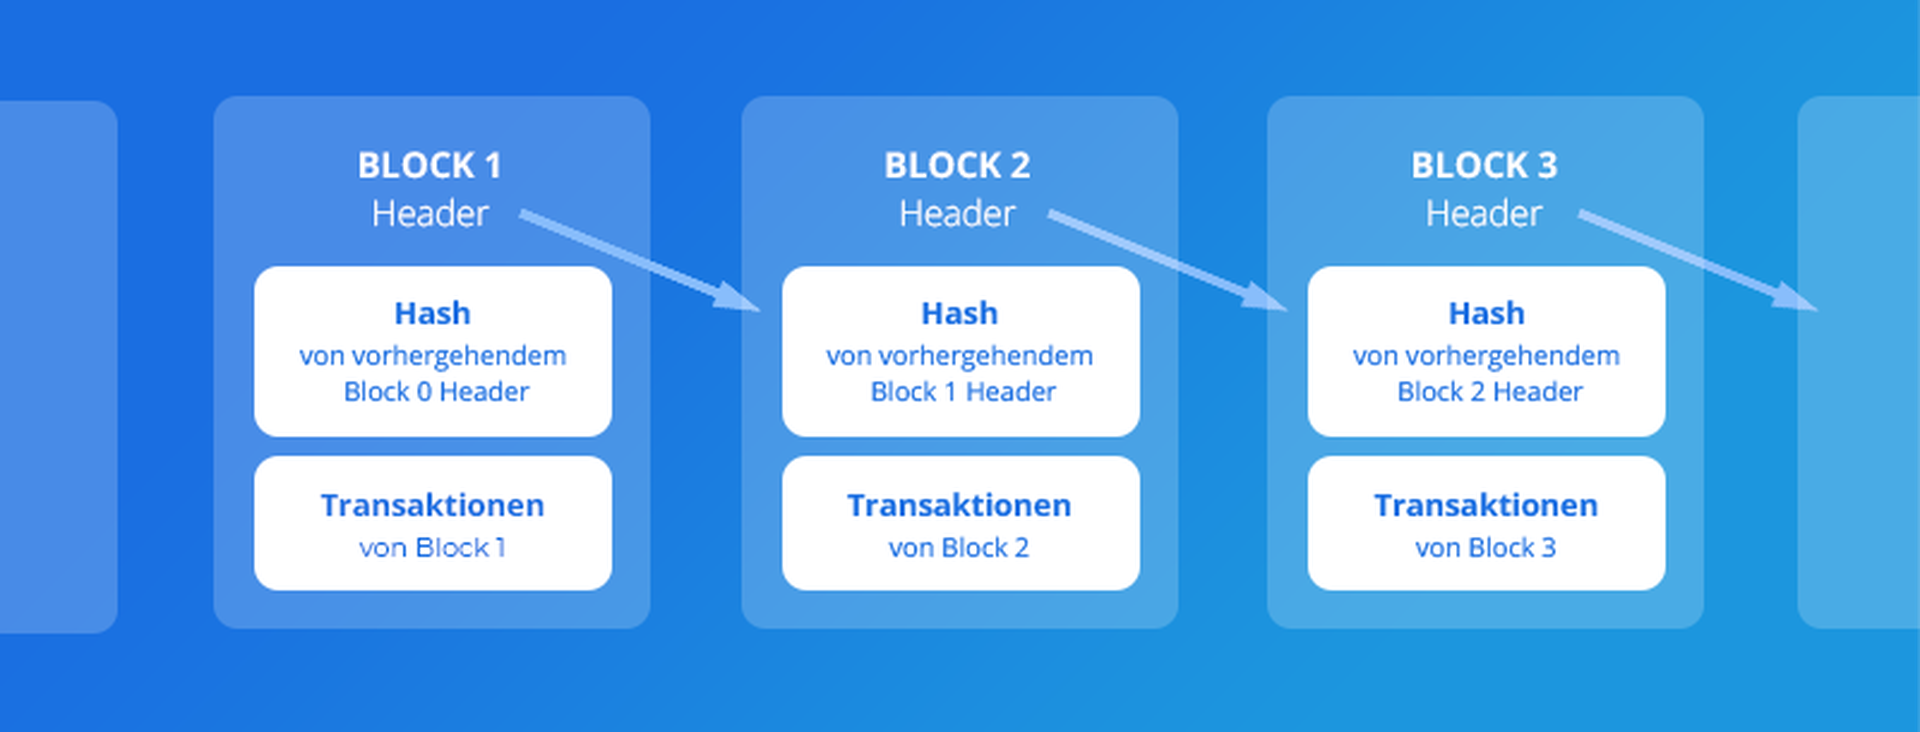 Aufbau einer Blockchain